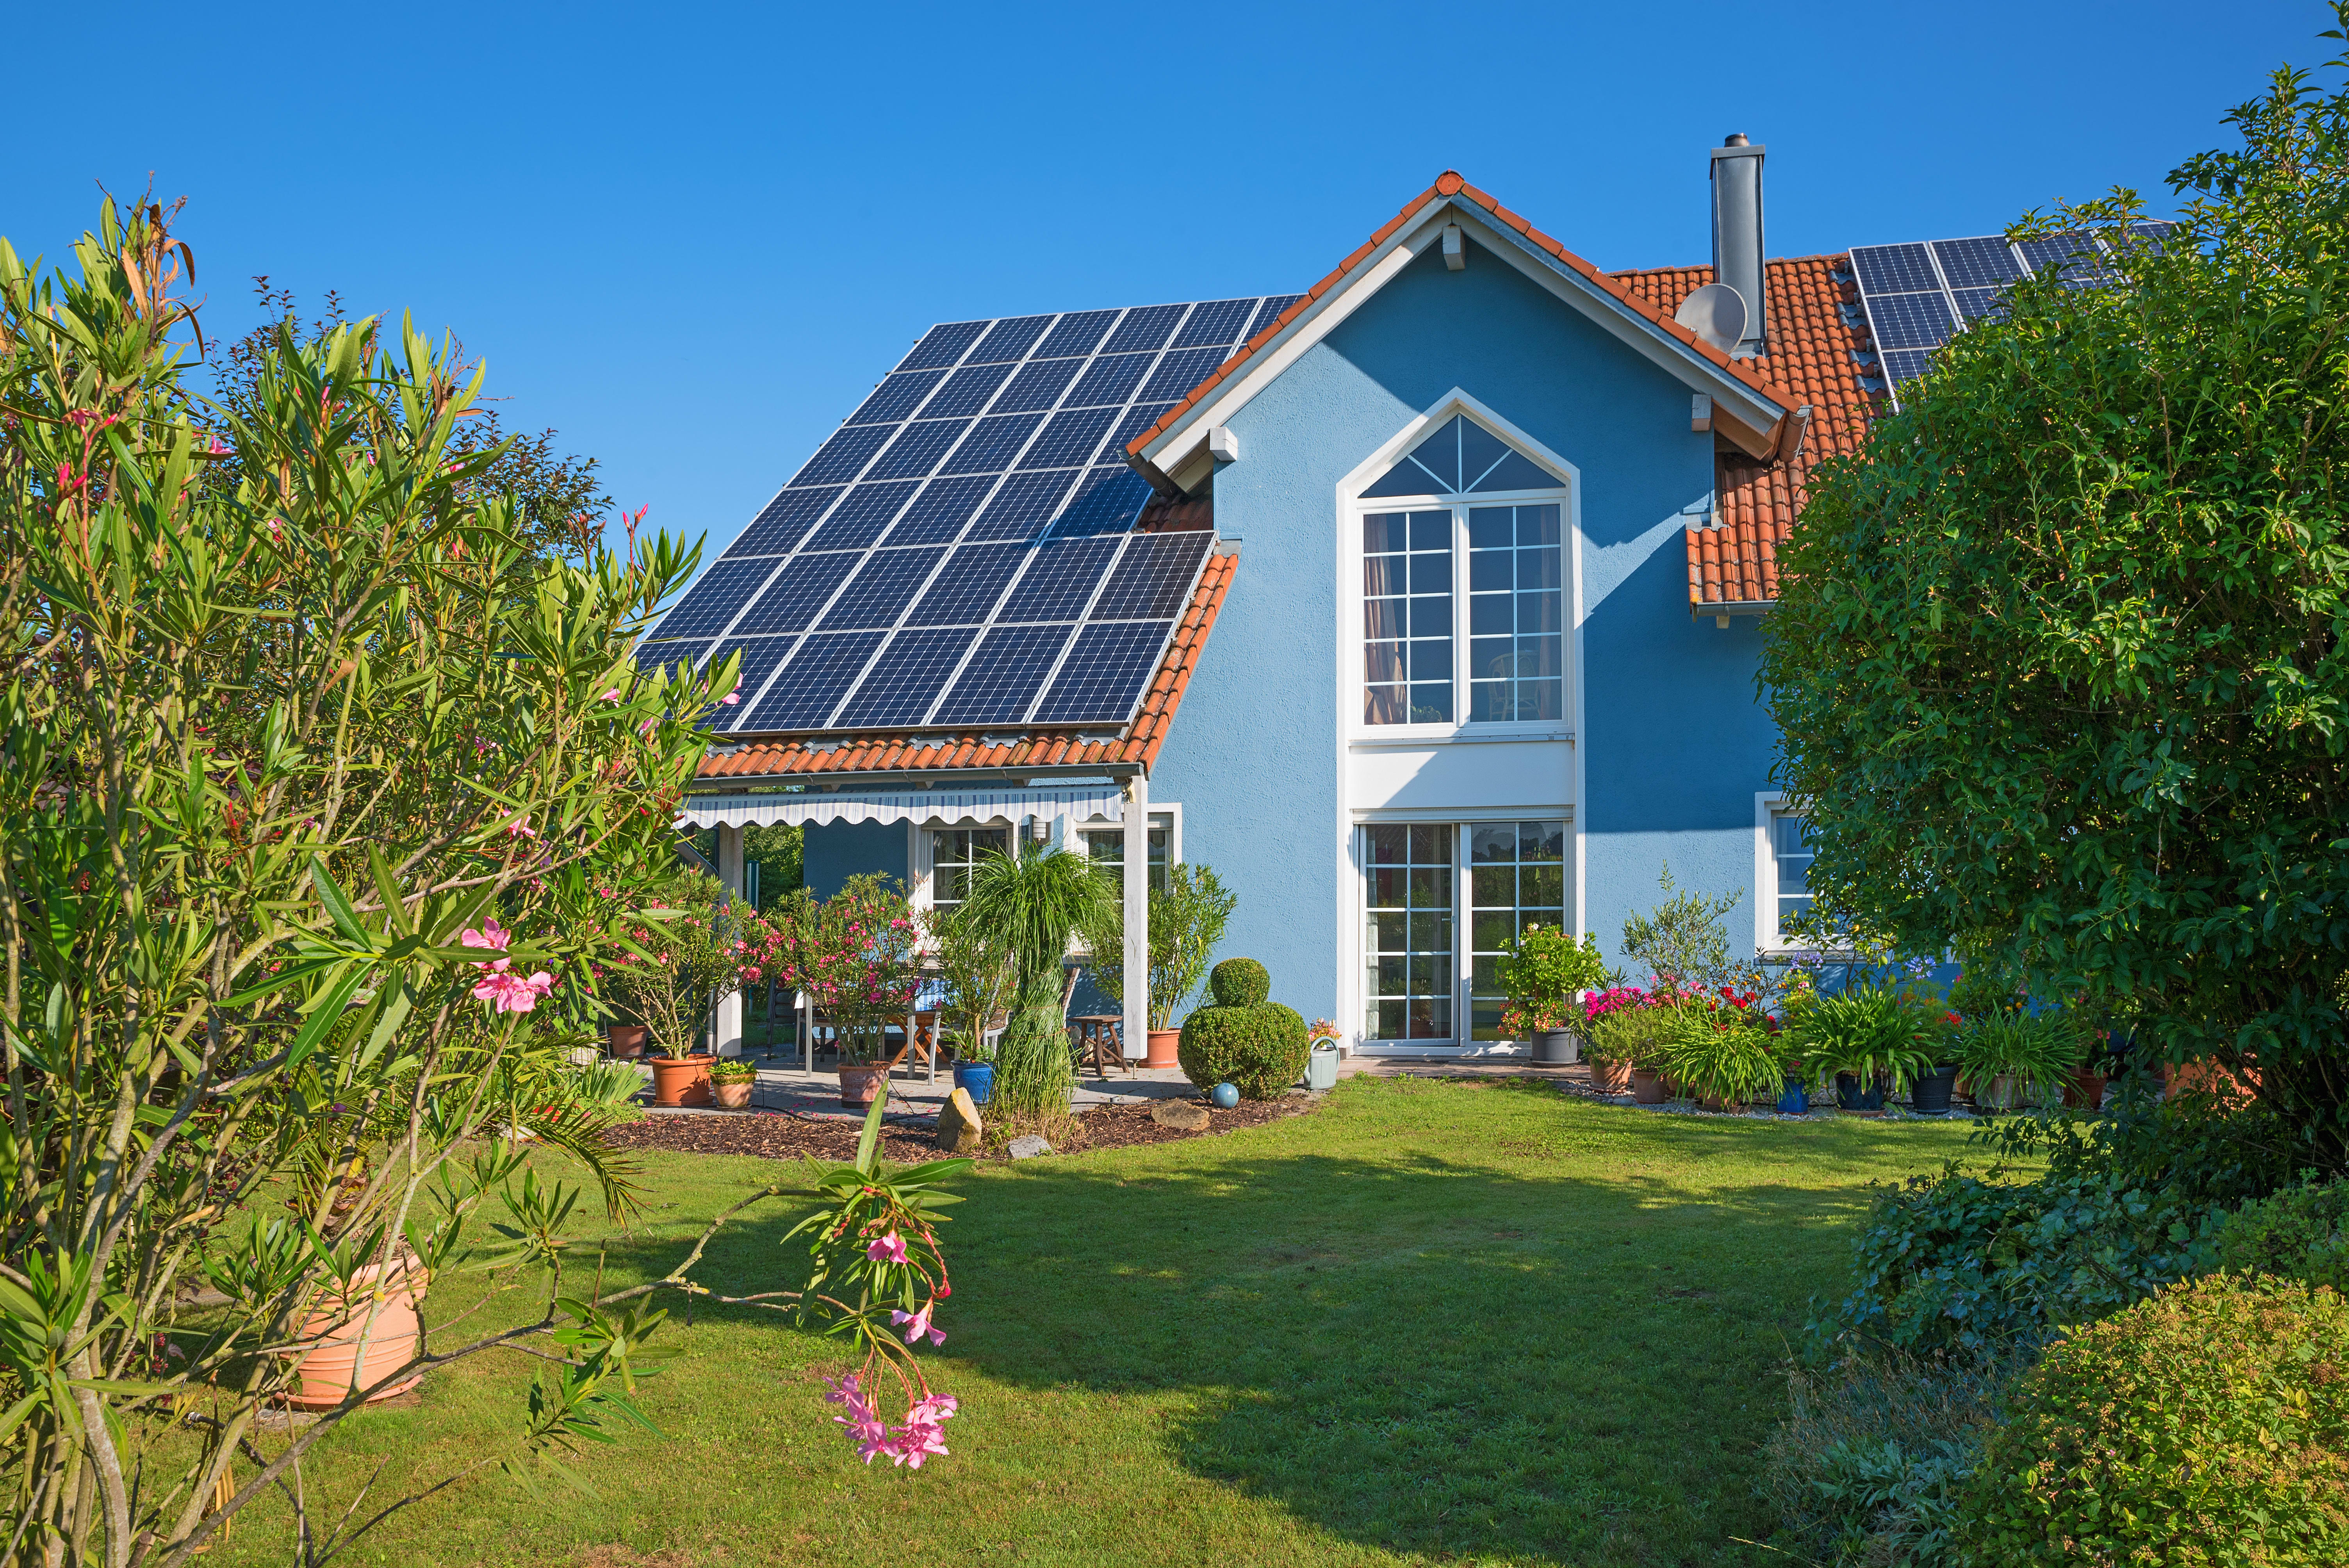 Einfamilienhaus mit Solaranlage auf dem Dach und gepflegtem Garten